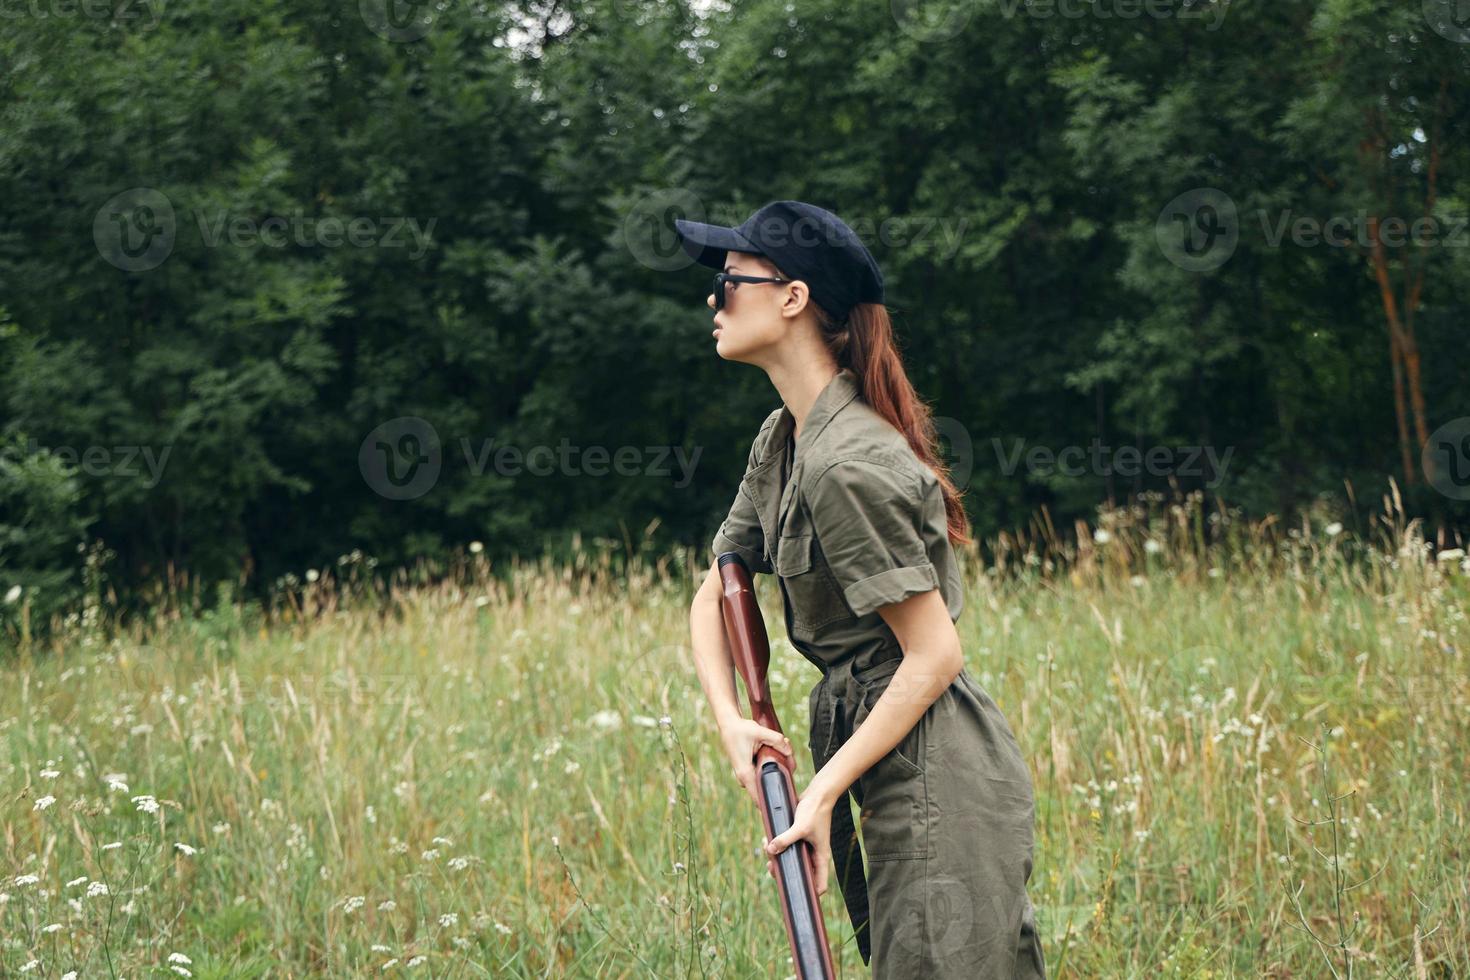 femme sur la nature dans une vert combinaison chasse arme Frais air photo